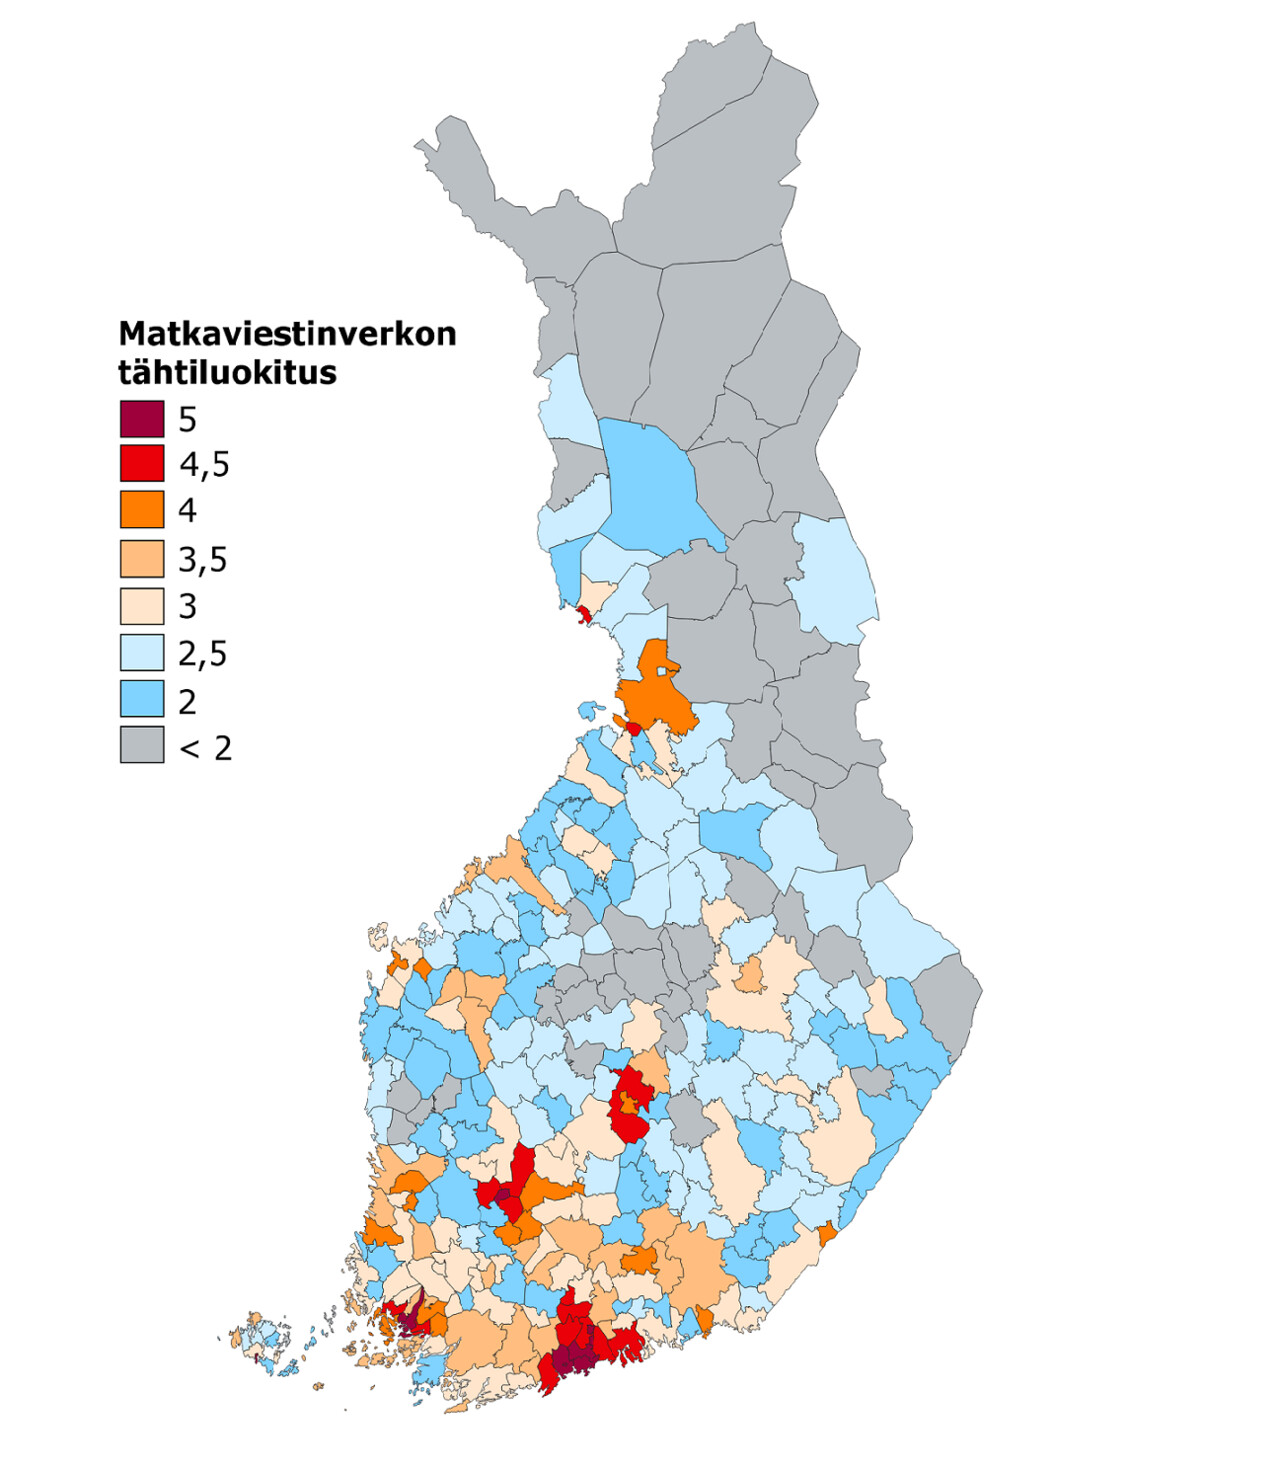 Kuntakohtainen nopean matkaviestinverkon saatavuusluokitus 2020. Erityisesti 5G-verkkojen rakentamisesta johtuen tilanne on paras pääkaupunkiseudulla sekä Turun, Tampereen, Jyväskylän ja Oulun alueilla, joilla päästään luokkiin 4 tai 5. Pohjois- ja Itä-Suomessa tilanne on selvästi heikompi ja luokitus on pääosin heikoimmissa luokissa alle 2,5 tason.